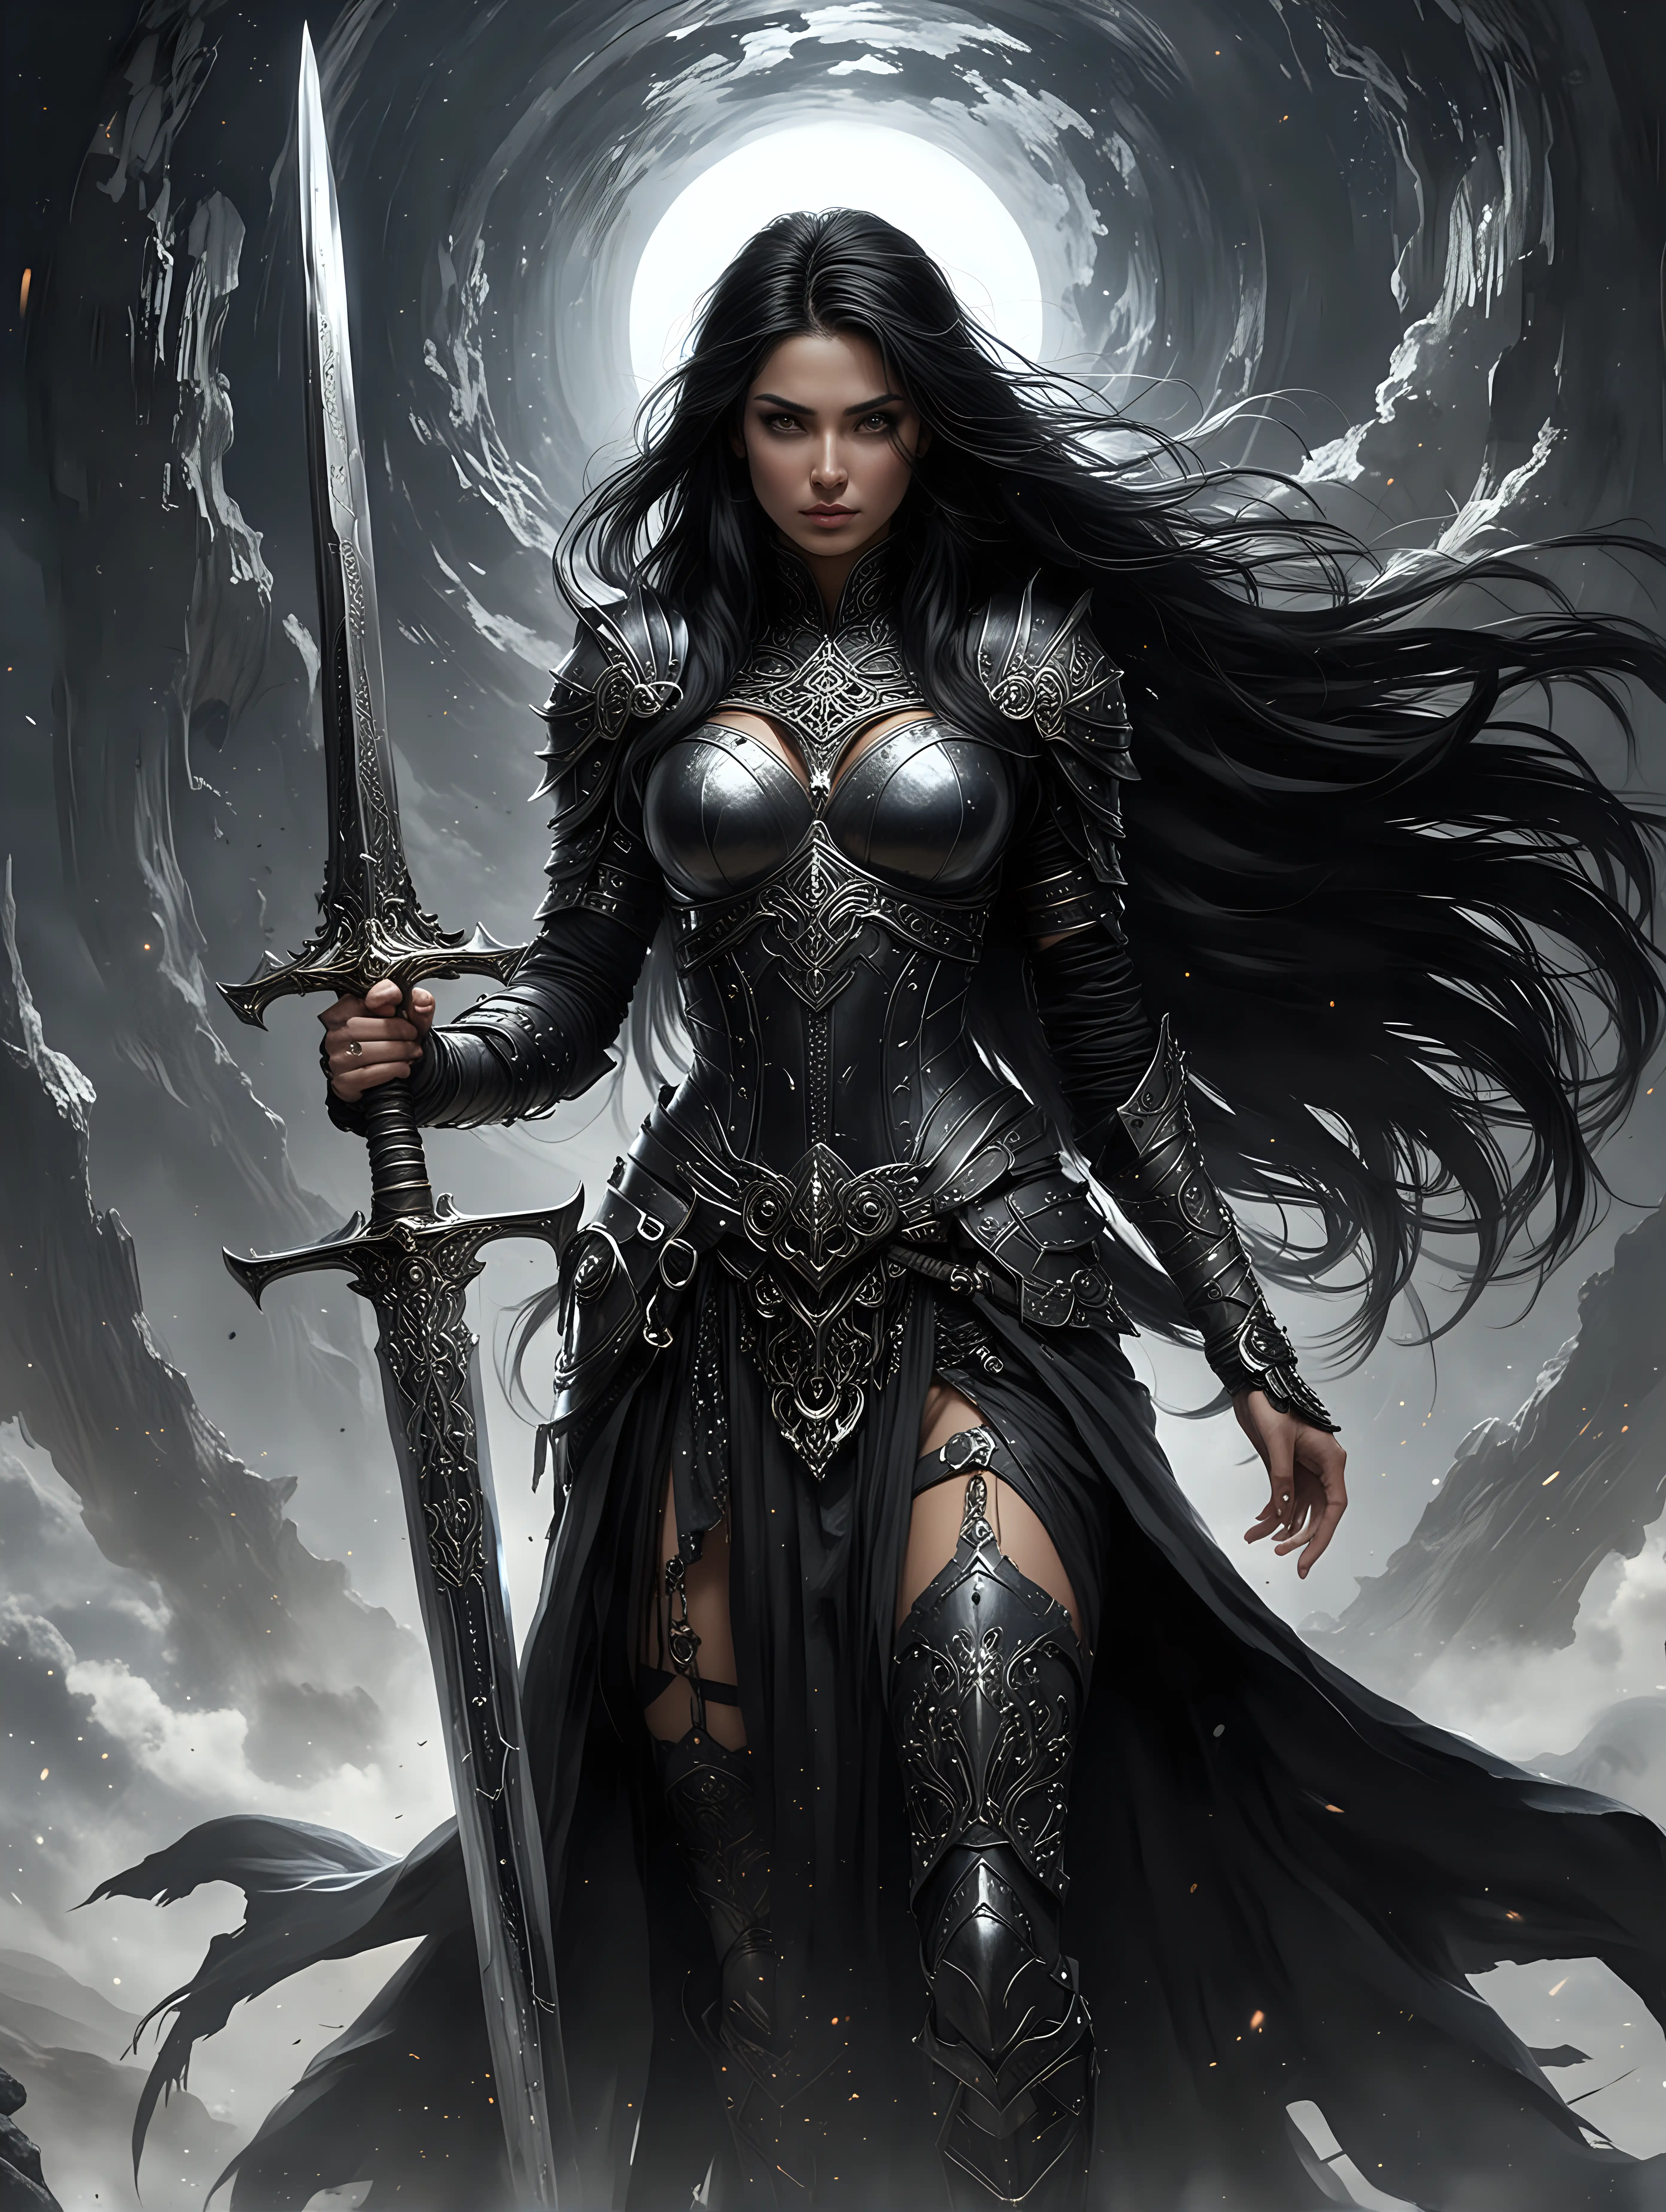 На фоне черной дыры стоит красивая женщина воин, она жрица, в руке у нее большой меч. Глаза женщины украшает железная маска. У женщины длинные черные волосы. На женщине одежда с доспехами черного цвета, которая развивается на ветру.